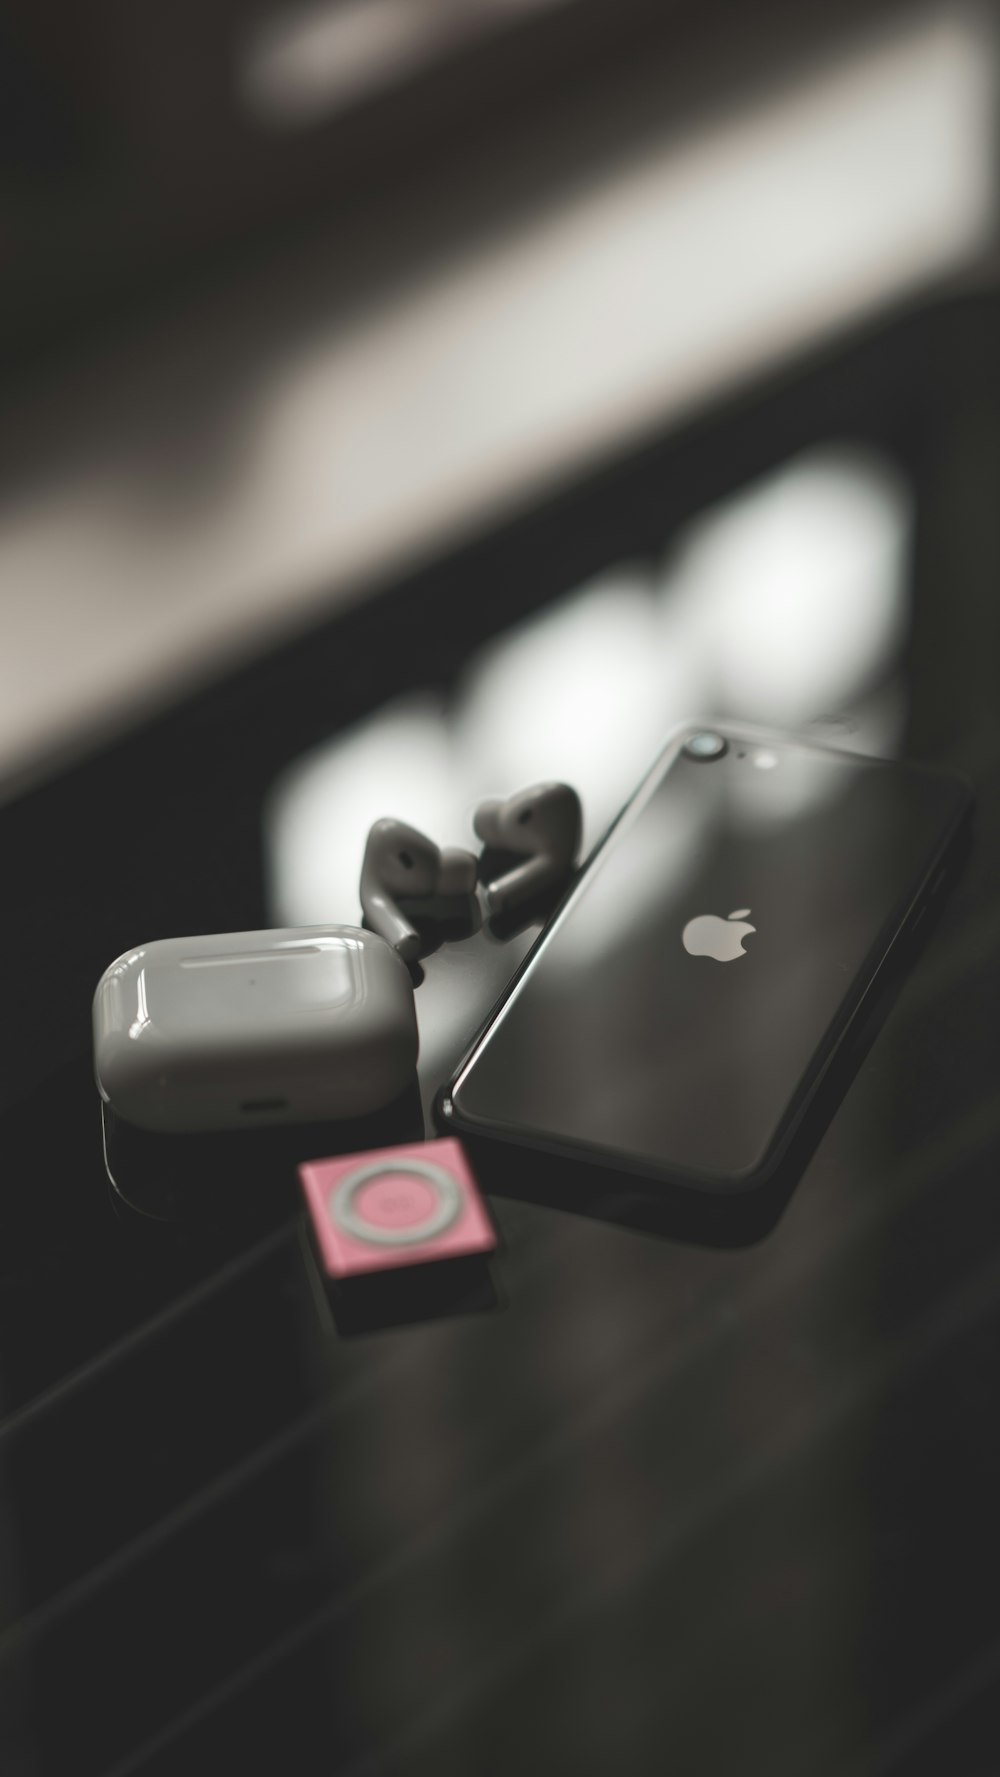 Schwarzes iPhone 7 mit schwarzen und roten Beats von Dr. Dre Earbuds